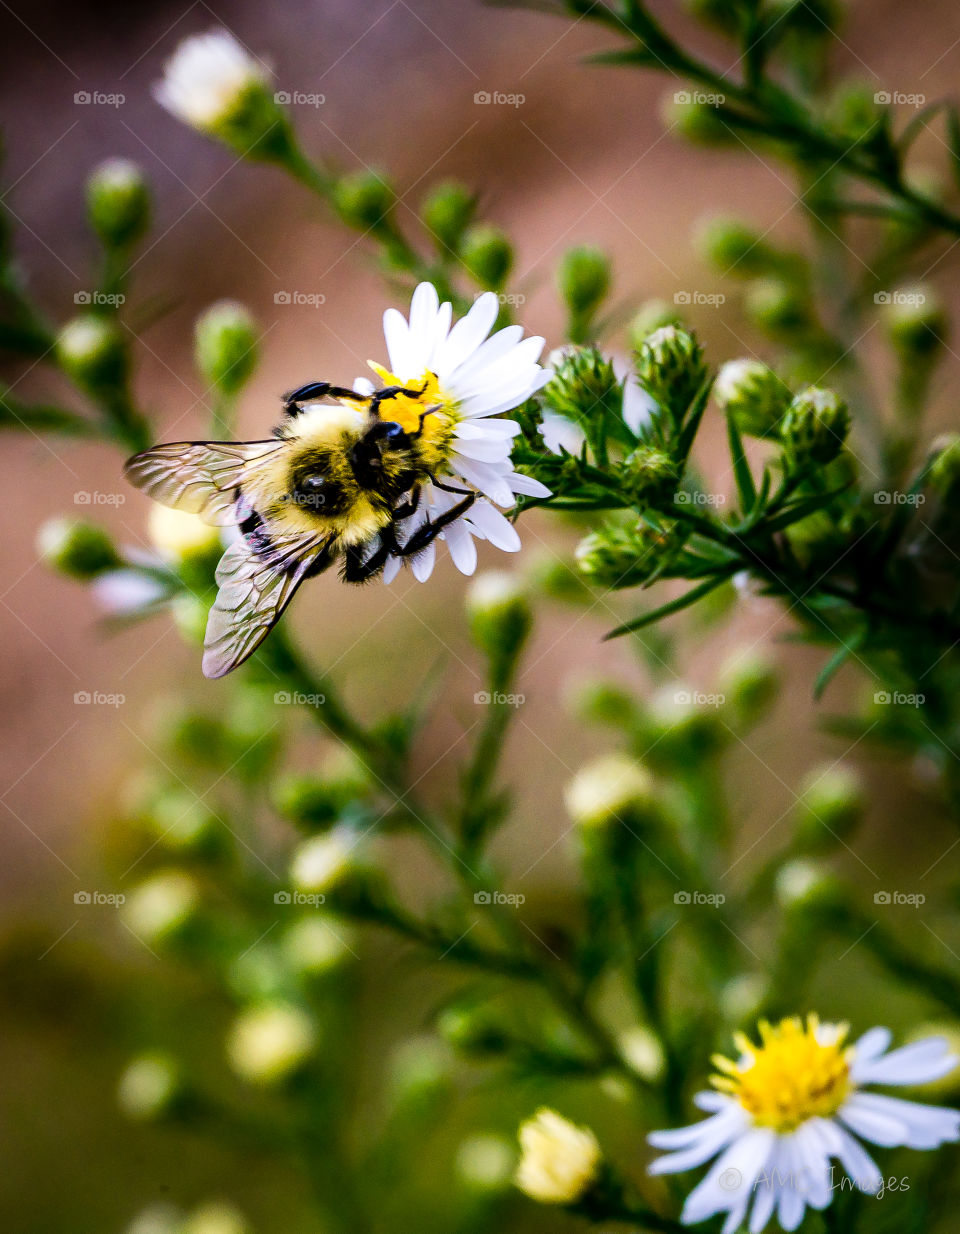 Bumblebee on a daisy